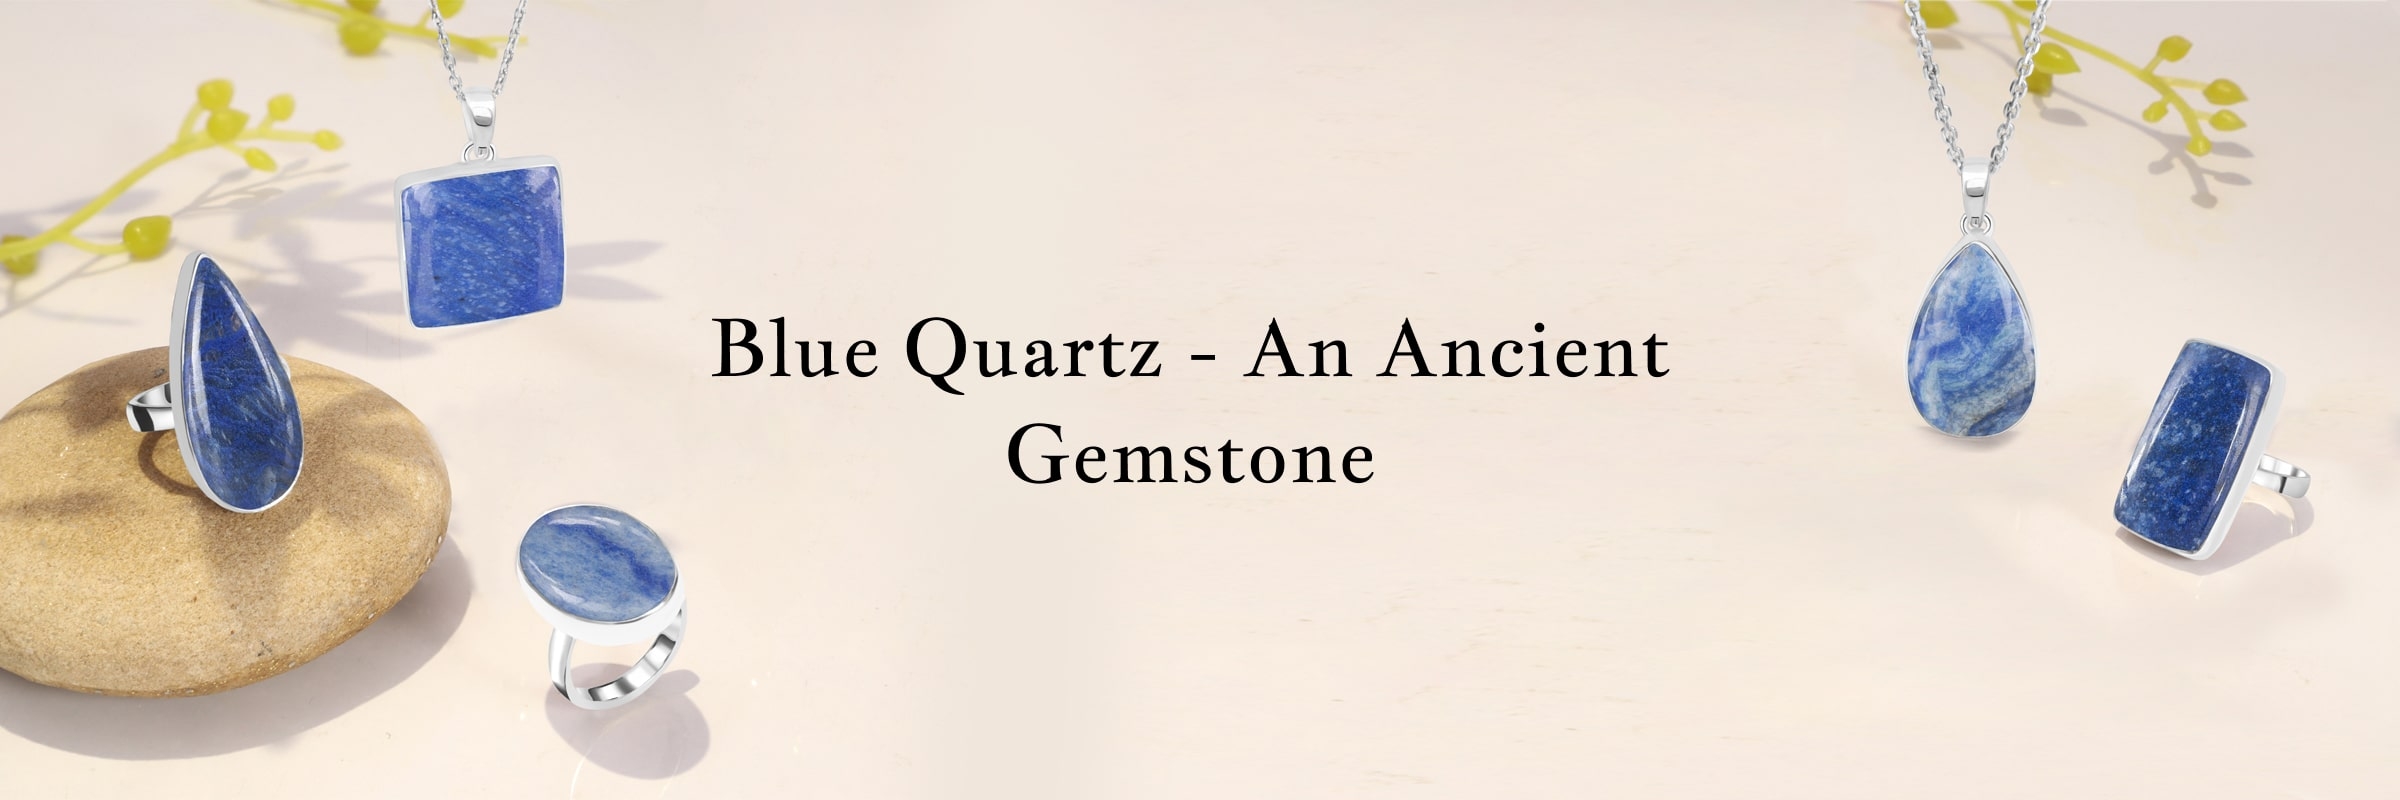 History of Blue Quartz Gem